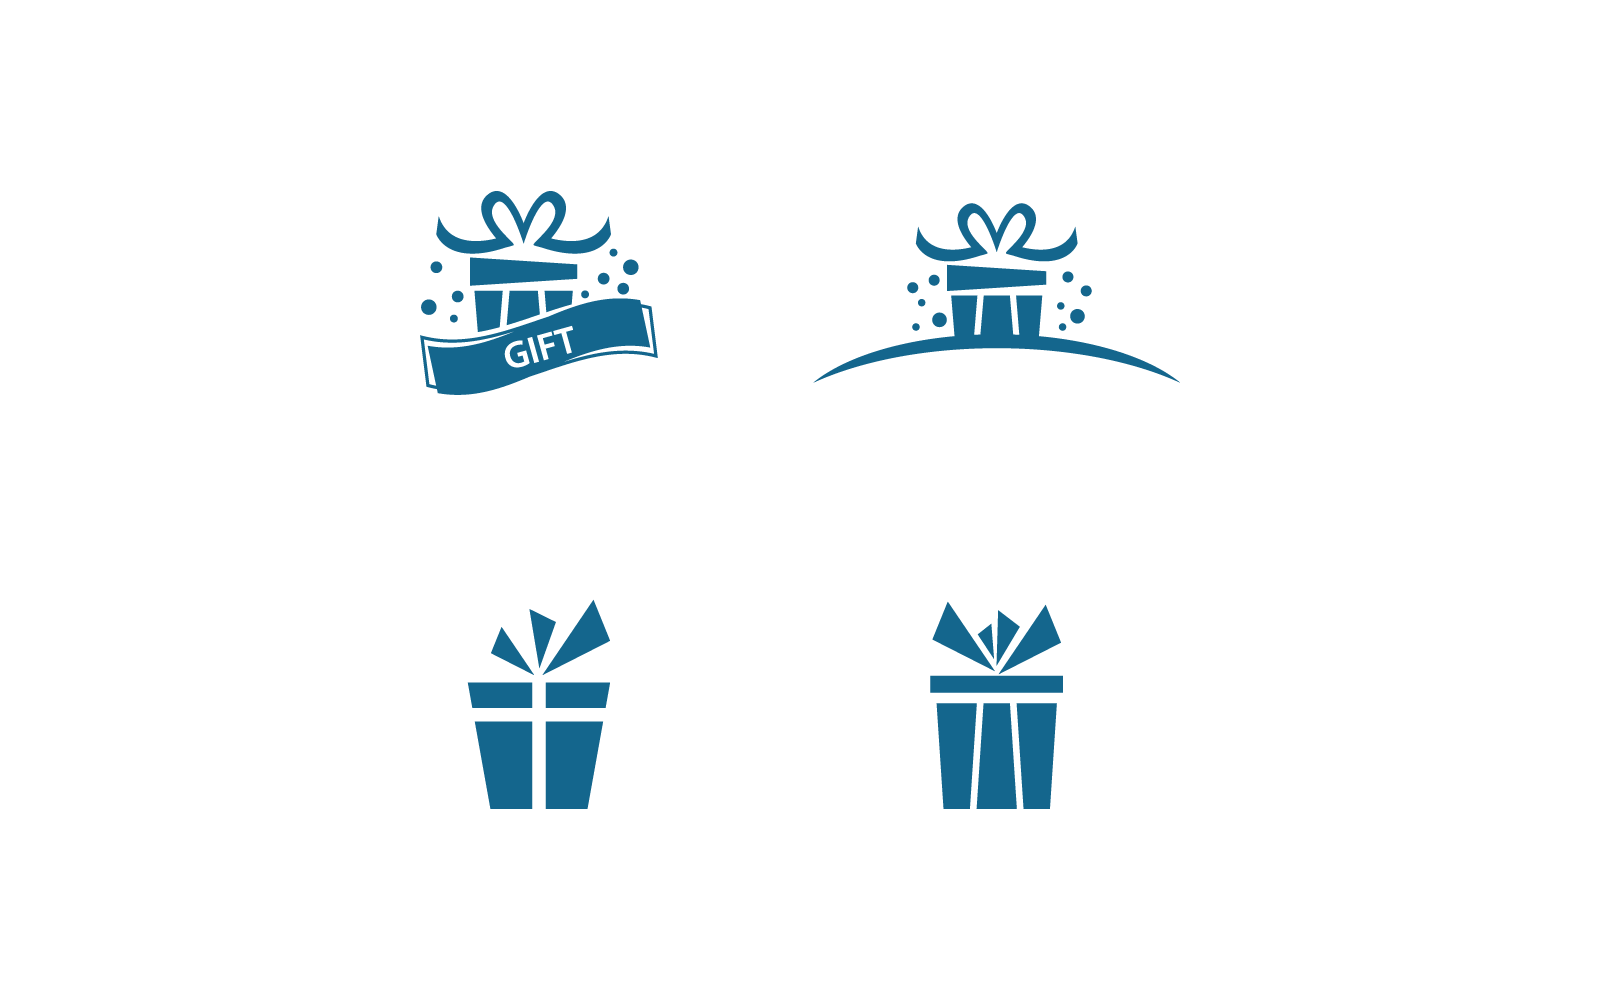 Gift Box, gift shop logo design icon vector template